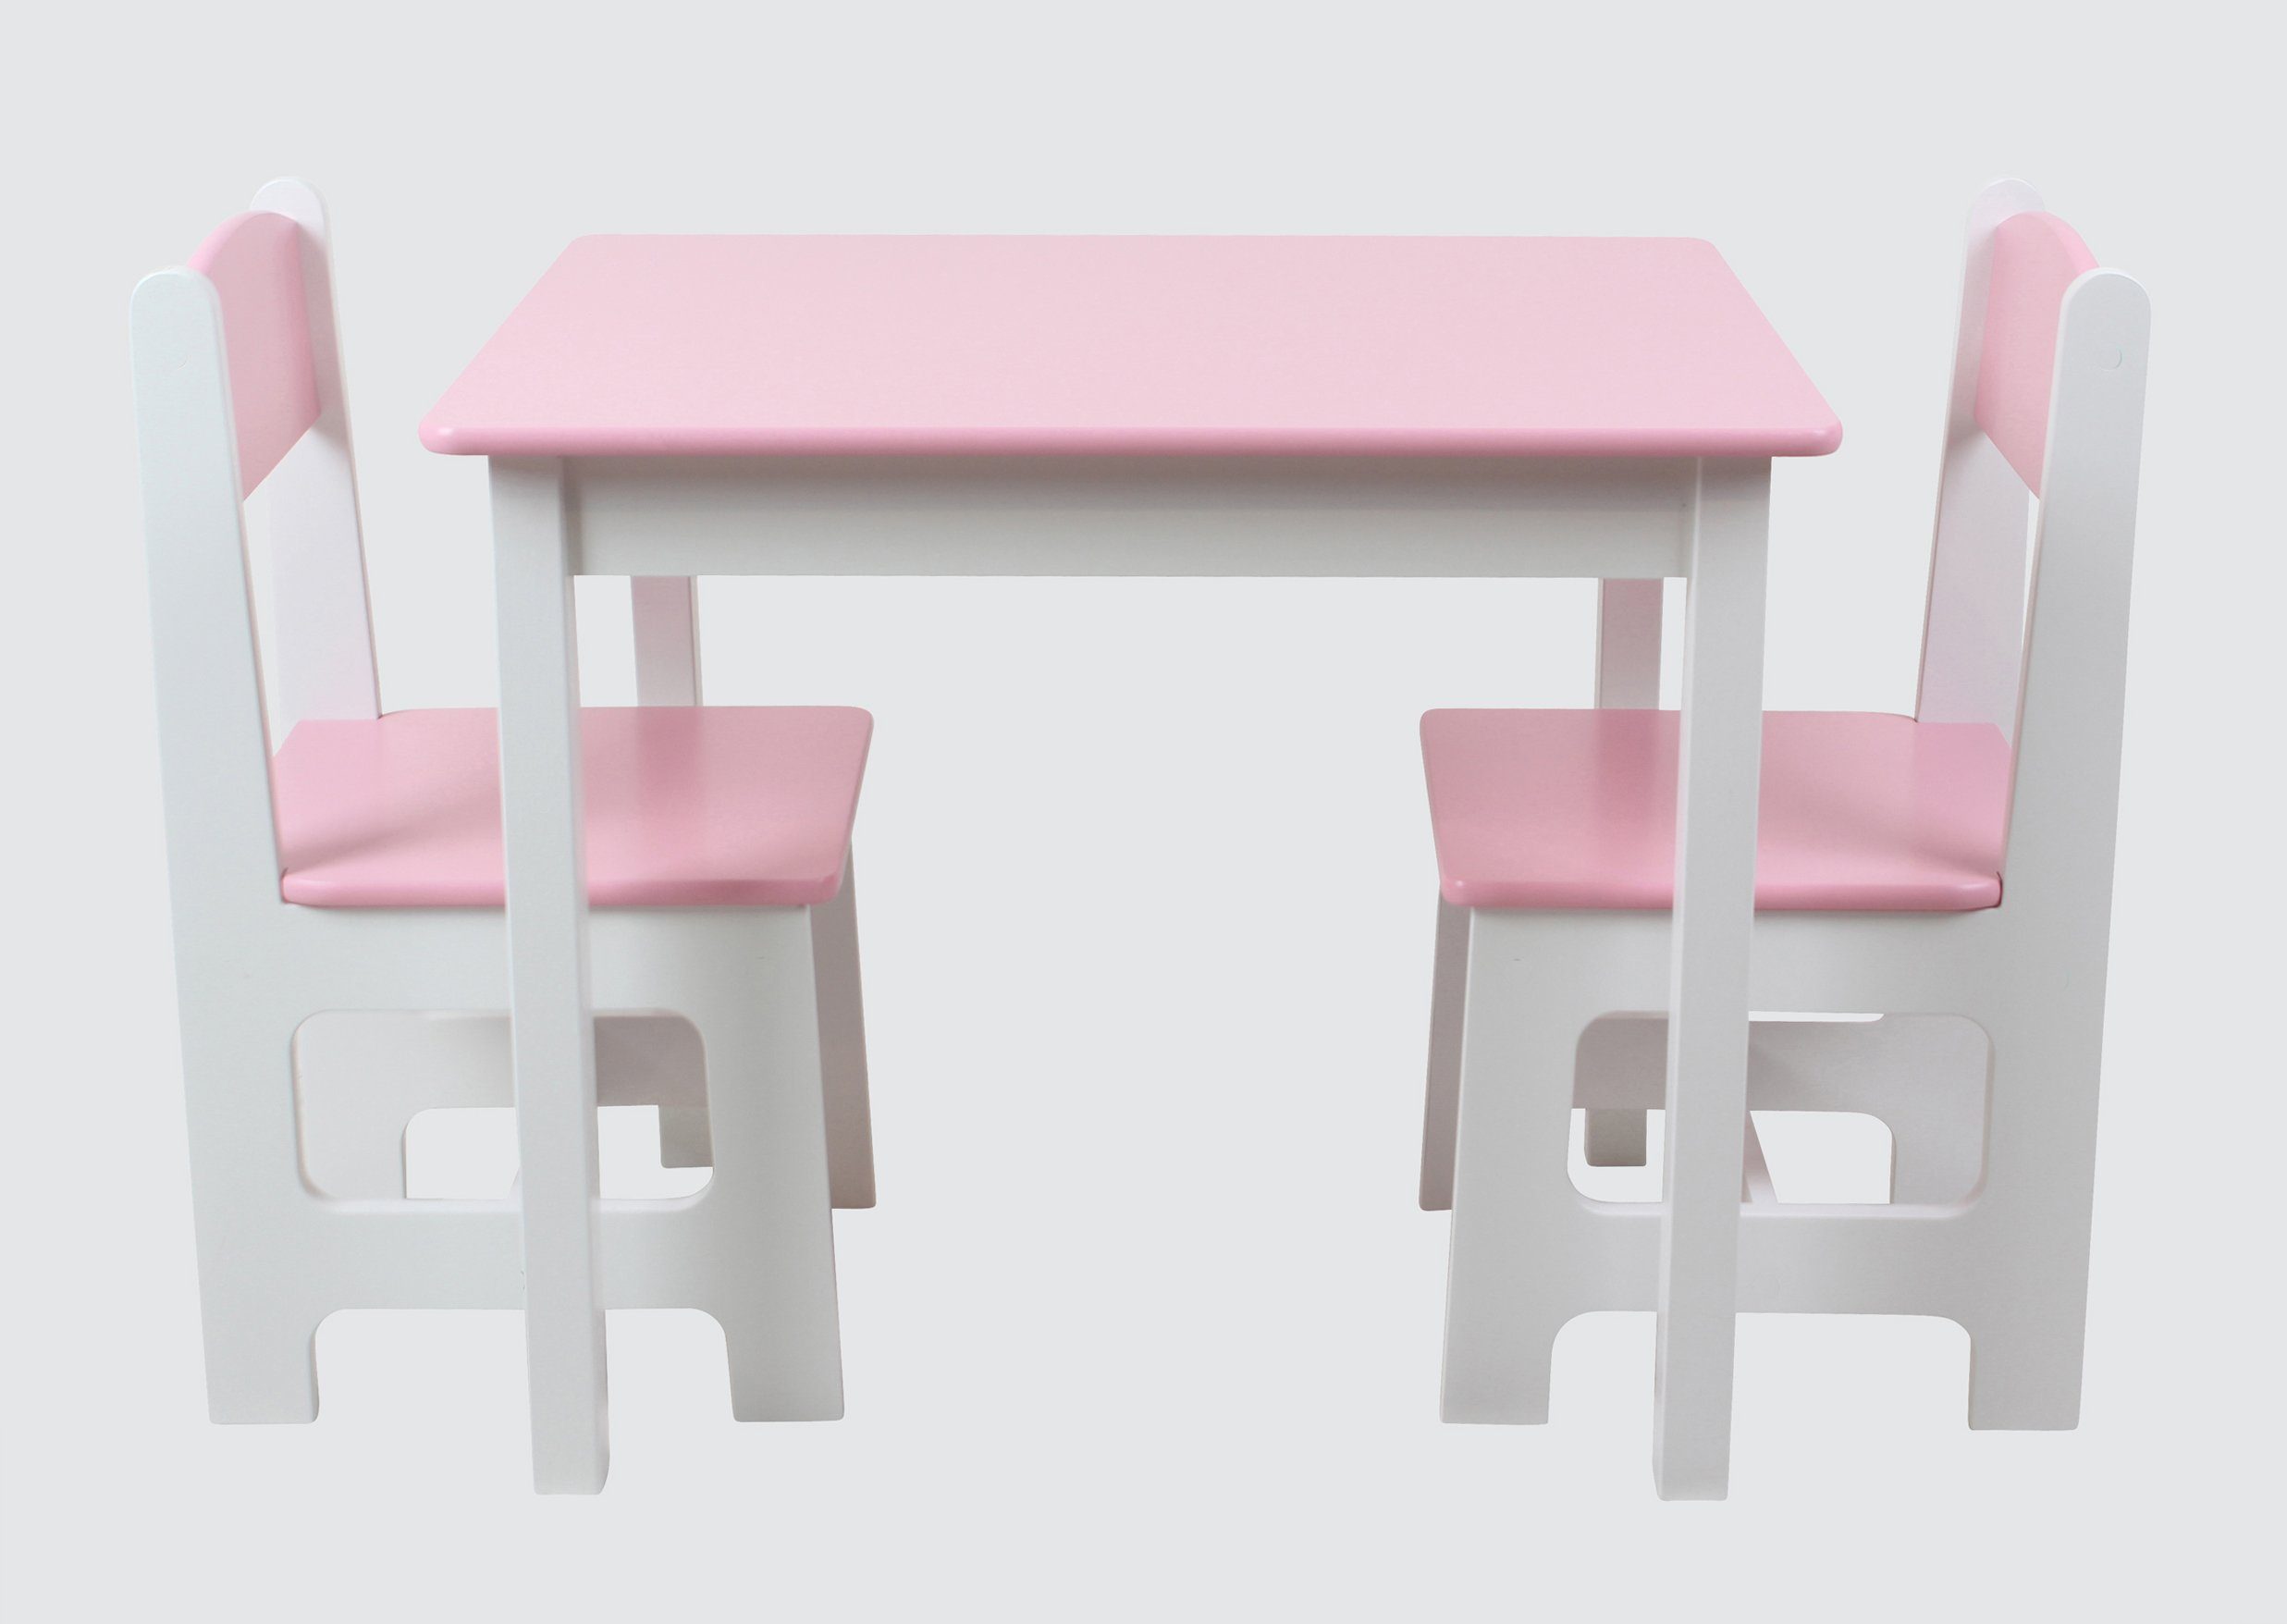 & Kindertisch Stühle Kindermöbelset 2 habeig Hocker Rosa+Weiß Maltisch Kindersitzgruppe 60x50x50cm